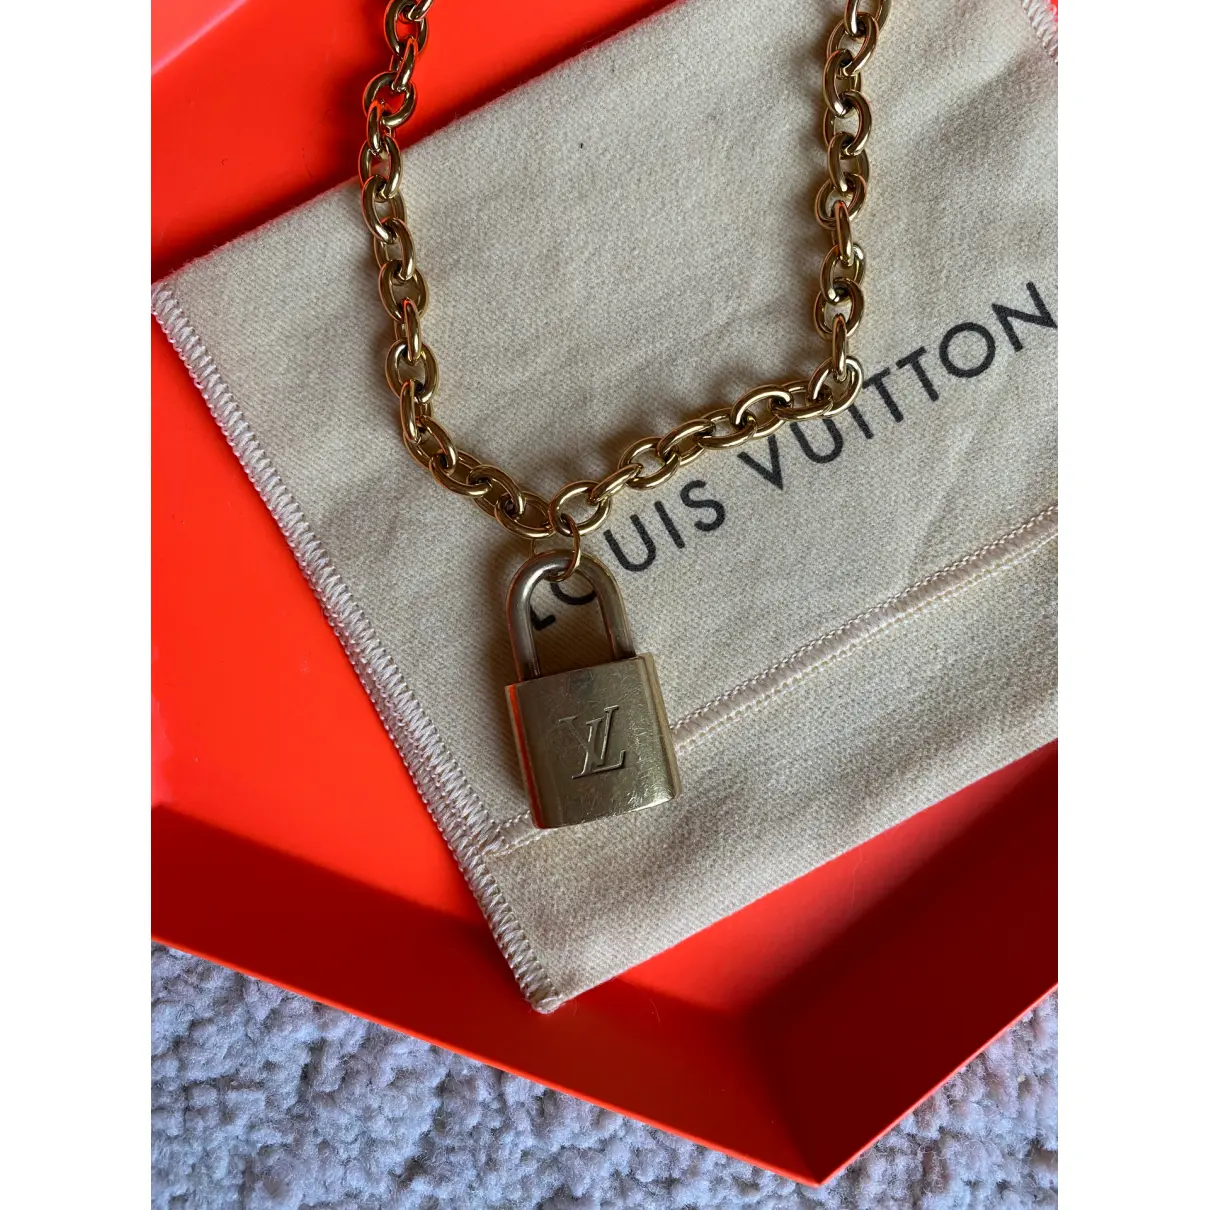 Buy Louis Vuitton Lockit necklace online - Vintage